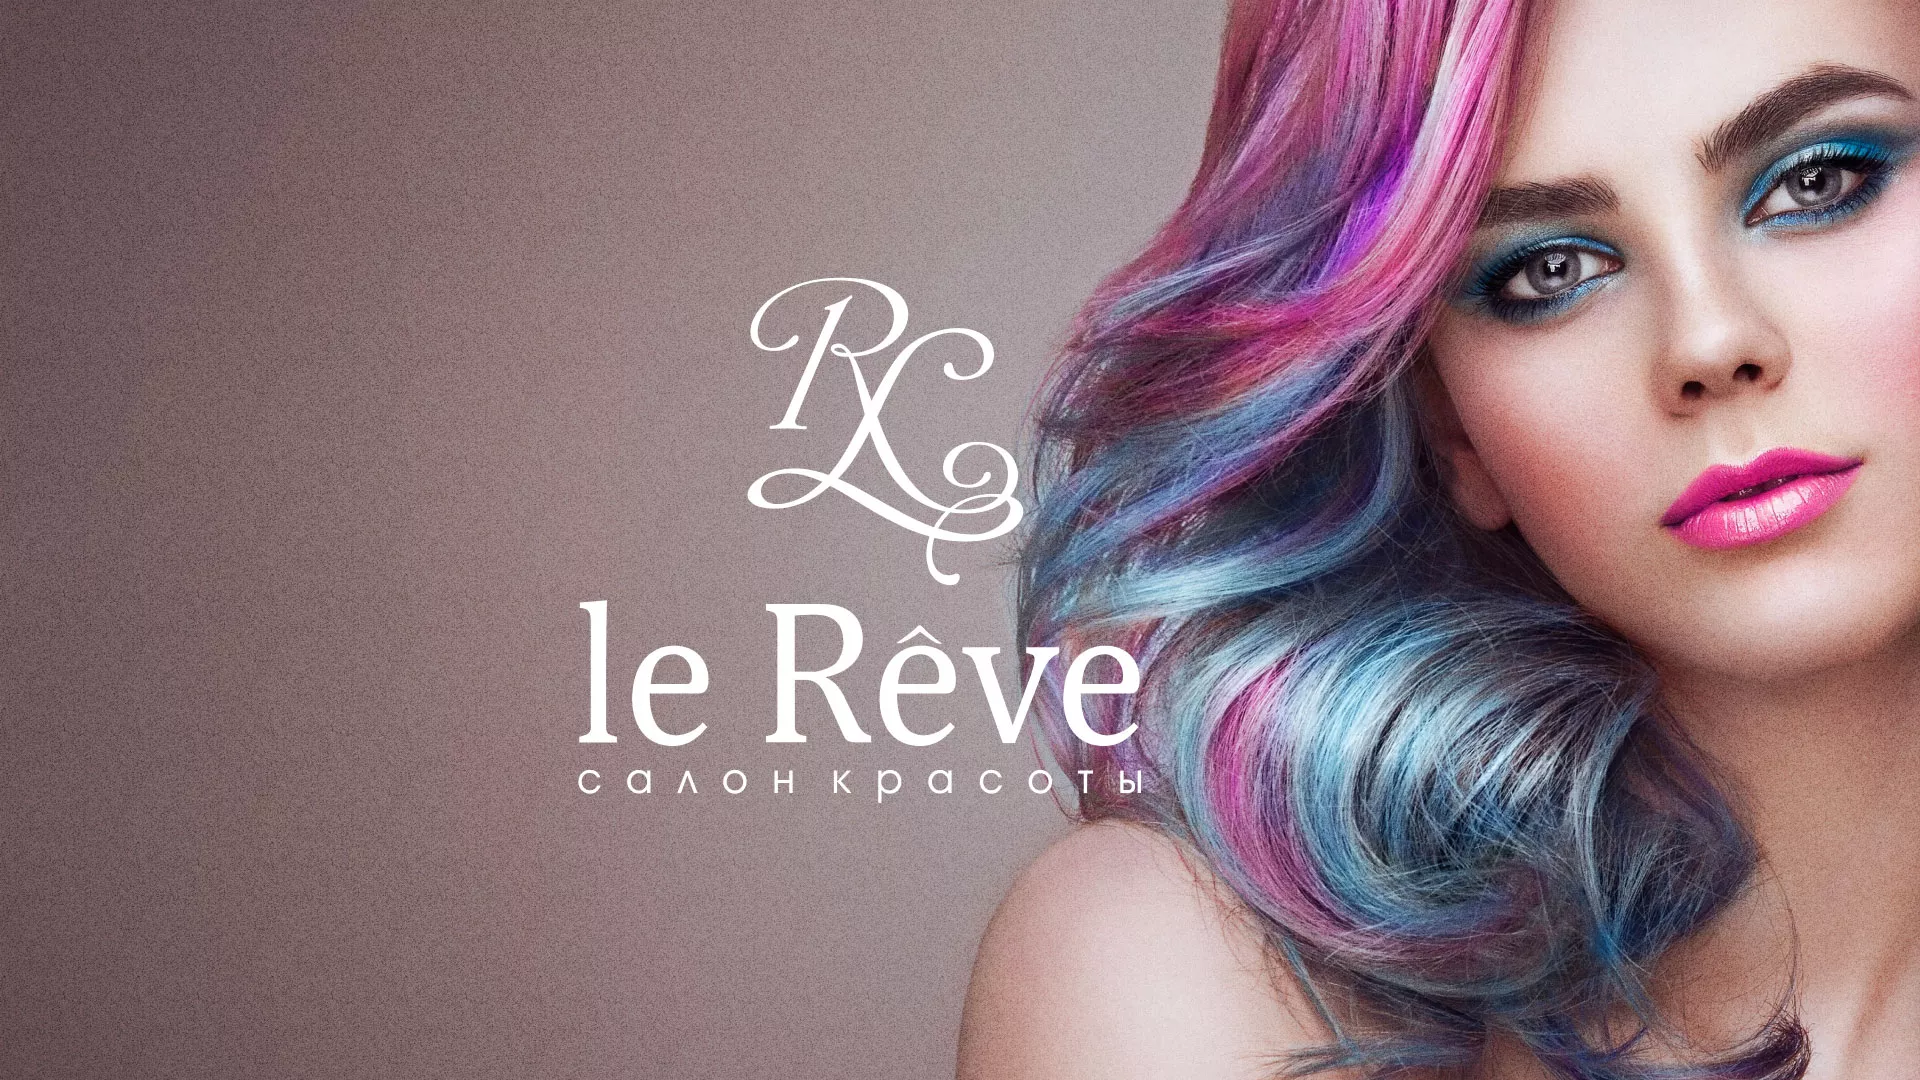 Создание сайта для салона красоты «Le Reve» в Большом Камне